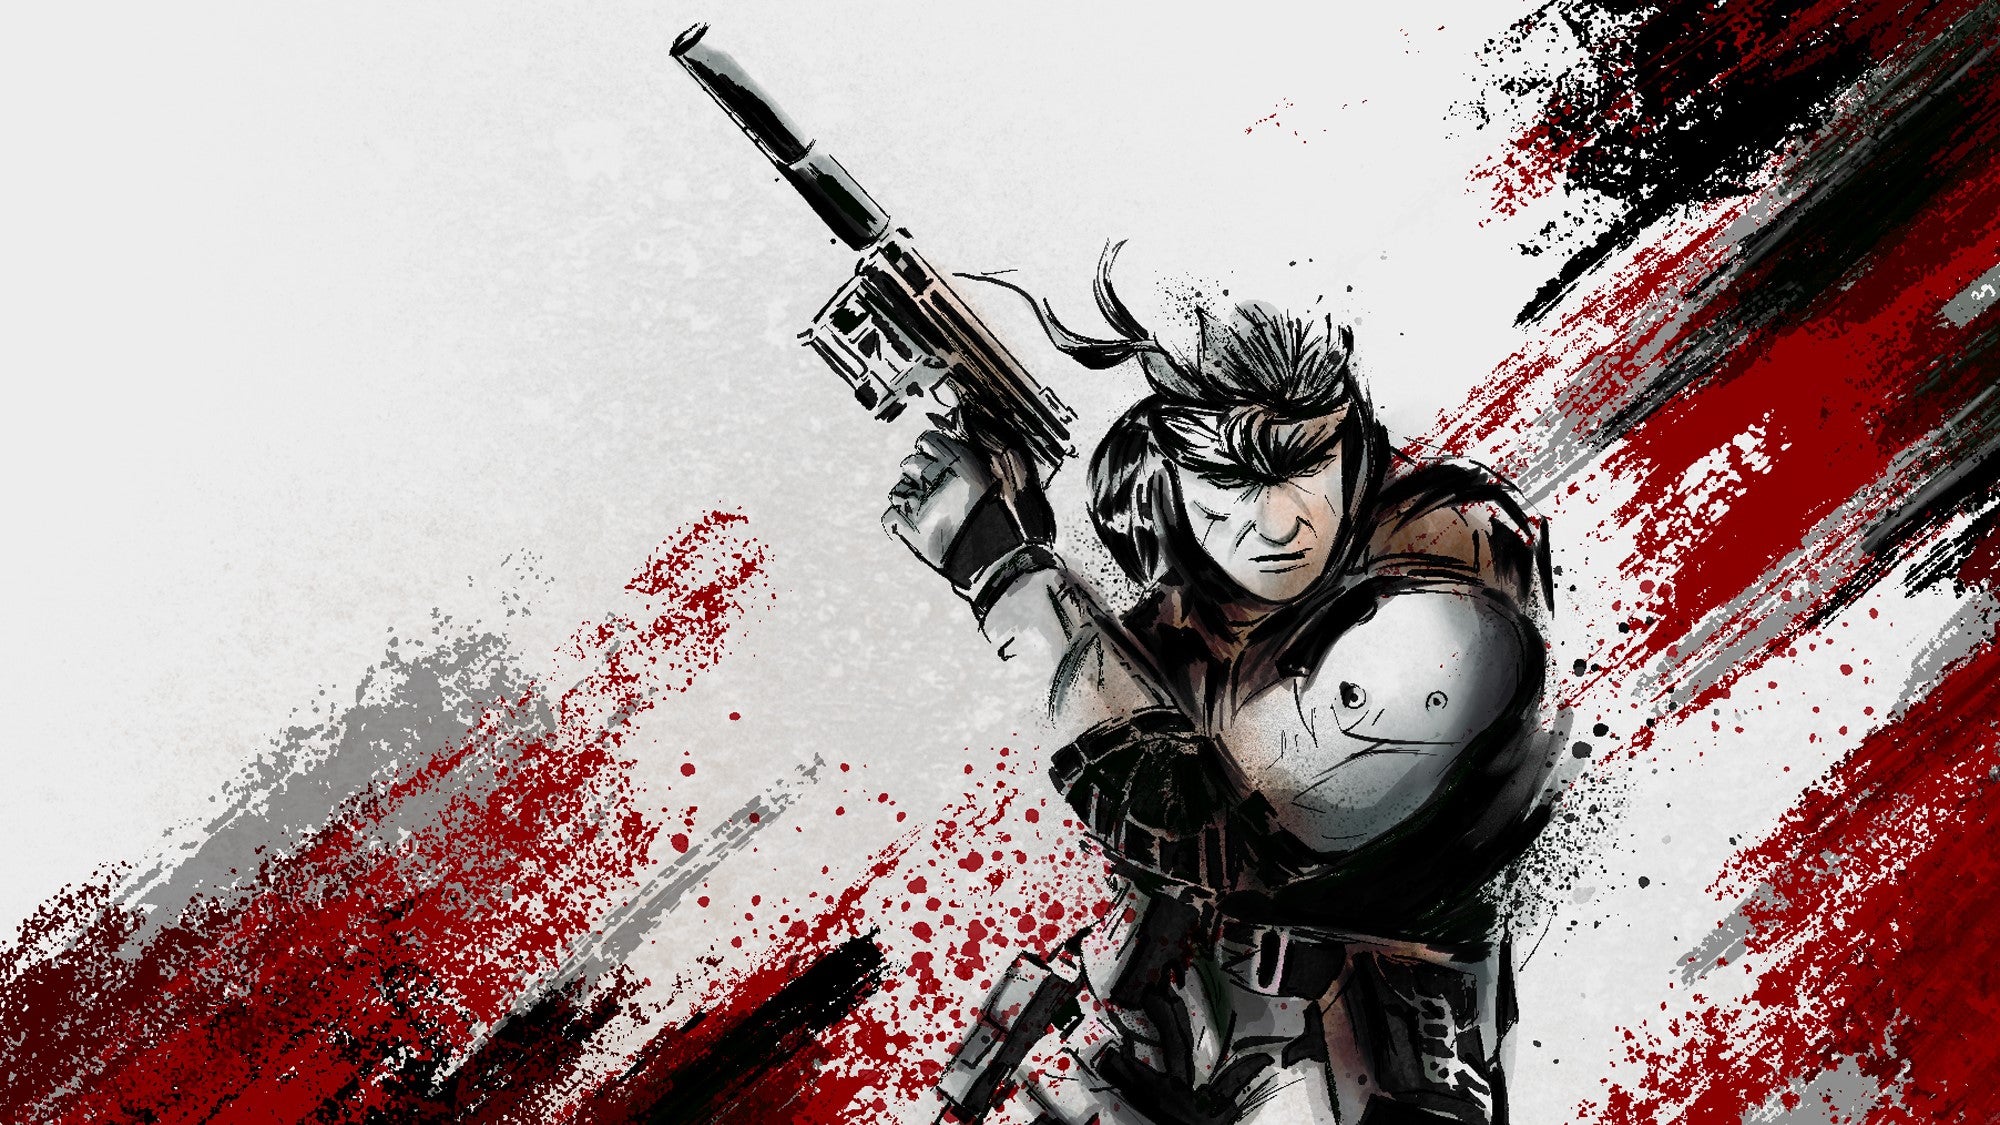 Bilder zu Metal Gear Solid soll einem Insider zufolge ein Remake erhalten